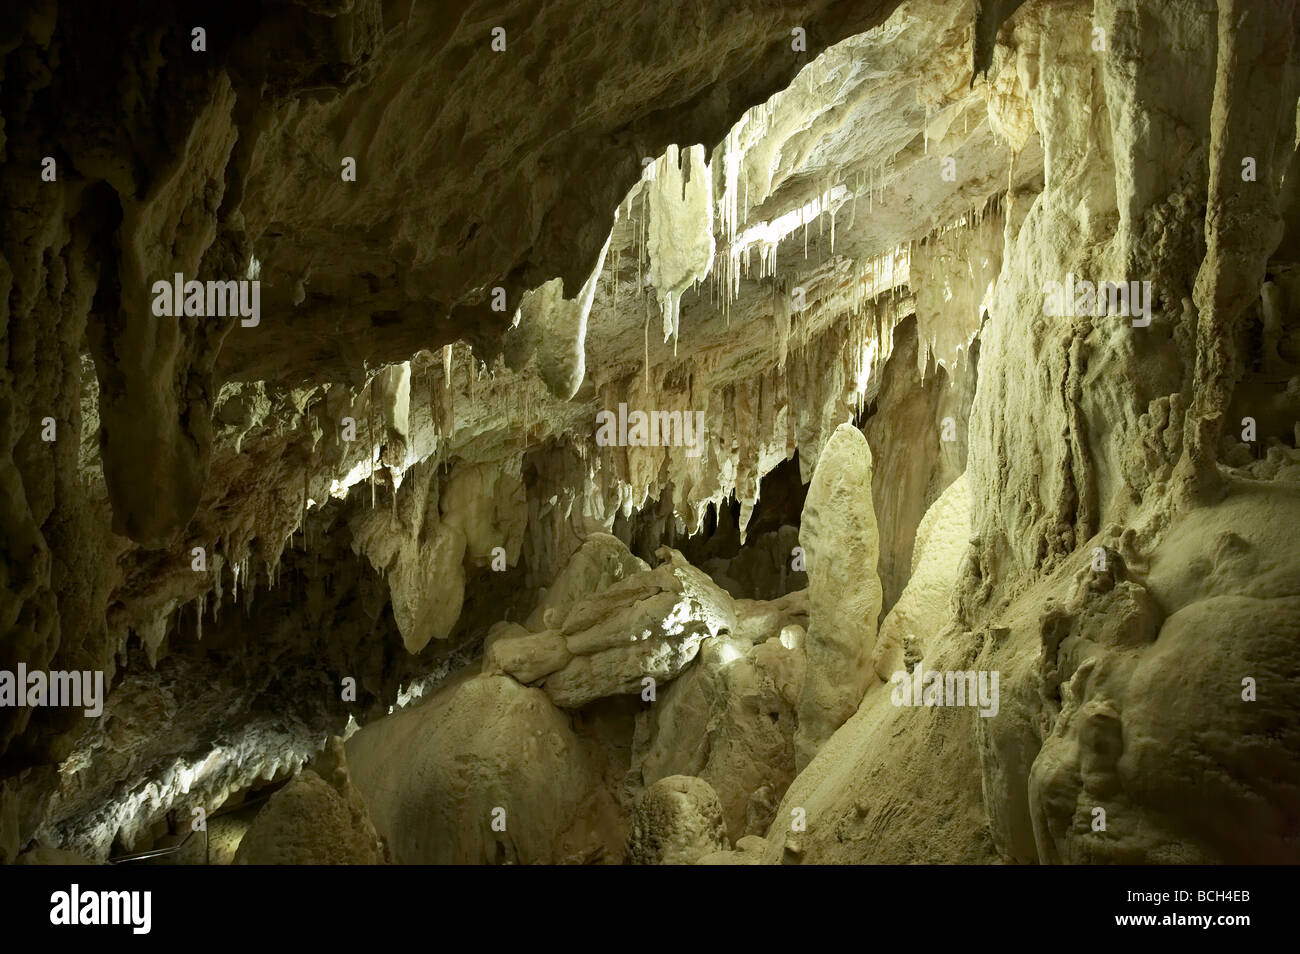 Las estalactitas y estalagmitas Sur Gloria Cueva Yarrangobilly Caves Kosciuszko Parque Nacional Montañas nevadas de Nueva Gales del Sur Austra Foto de stock